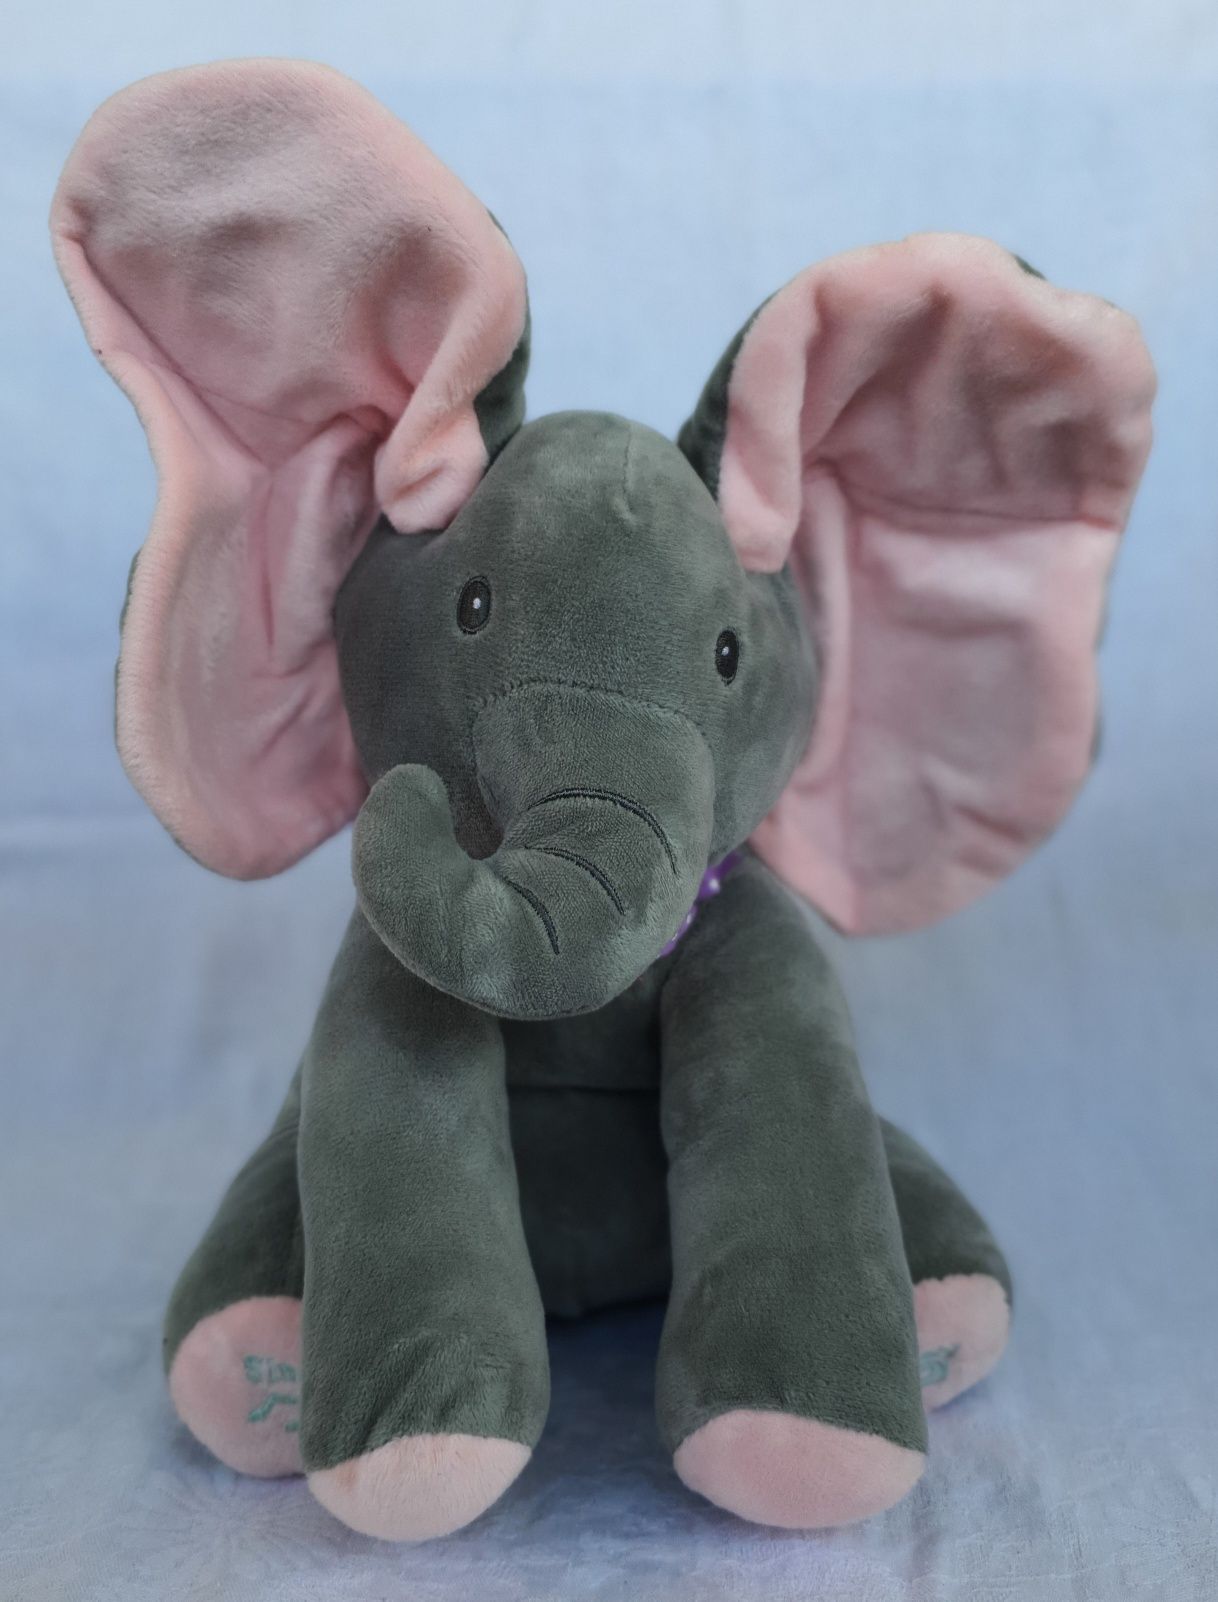 Zabawka, interaktywny słoń peekaboo